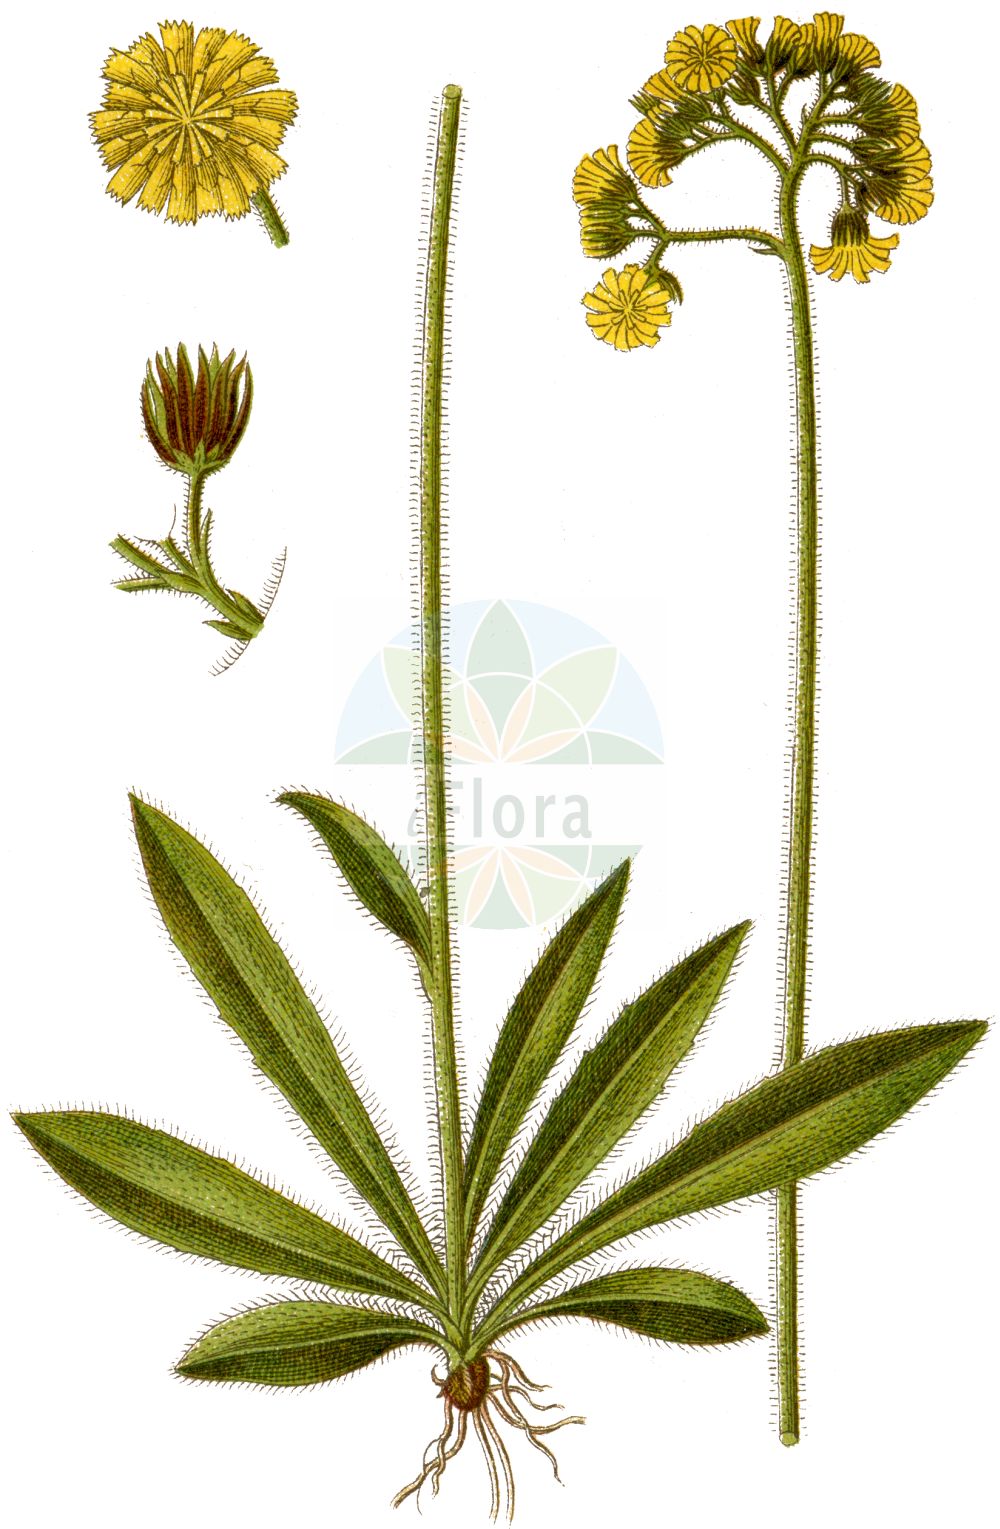 Historische Abbildung von Pilosella cymosa (Trugdoldiges Habichtskraut - Cymose Mouse-ear-Hawkweed). Das Bild zeigt Blatt, Bluete, Frucht und Same. ---- Historical Drawing of Pilosella cymosa (Trugdoldiges Habichtskraut - Cymose Mouse-ear-Hawkweed). The image is showing leaf, flower, fruit and seed.(Pilosella cymosa,Trugdoldiges Habichtskraut,Cymose Mouse-ear-Hawkweed,Hieracium arctogenum,Hieracium collinum,Hieracium cymosum,Hieracium ensiferum,Hieracium erraticum,Hieracium eusciadium,Hieracium granitophilum,Hieracium holmense,Hieracium lamprochaetoides,Hieracium leptadenium,Hieracium litoreum,Hieracium mollisetum,Hieracium pycnochaetum,Hieracium scotodes,Hieracium semilitoreum,Hieracium signiferum,Hieracium syrjaenorum,Hieracium tabergense,Hieracium tenacicaule,Hieracium trichocymosum,Pilosella arctogena,Pilosella collina,Pilosella cymosa,Pilosella ensifera,Pilosella erratica,Pilosella eusciadia,Pilosella granitophila,Pilosella holmensis,Pilosella leptadenia,Pilosella molliseta,Pilosella scotodes,Pilosella semilitorea,Pilosella setigera,Pilosella signifera,Pilosella syrjaenorum,Pilosella tabergensis,Pilosella tenacicaulis,Pilosella trichocymosa,Trugdoldiges Habichtskraut,Cymose Mouse-ear-Hawkweed,Pilosella,Mausohr-Habichtskräuter,Asteraceae,Korbblütengewächse,Daisy family,Blatt,Bluete,Frucht,Same,leaf,flower,fruit,seed,Sturm (1796f))